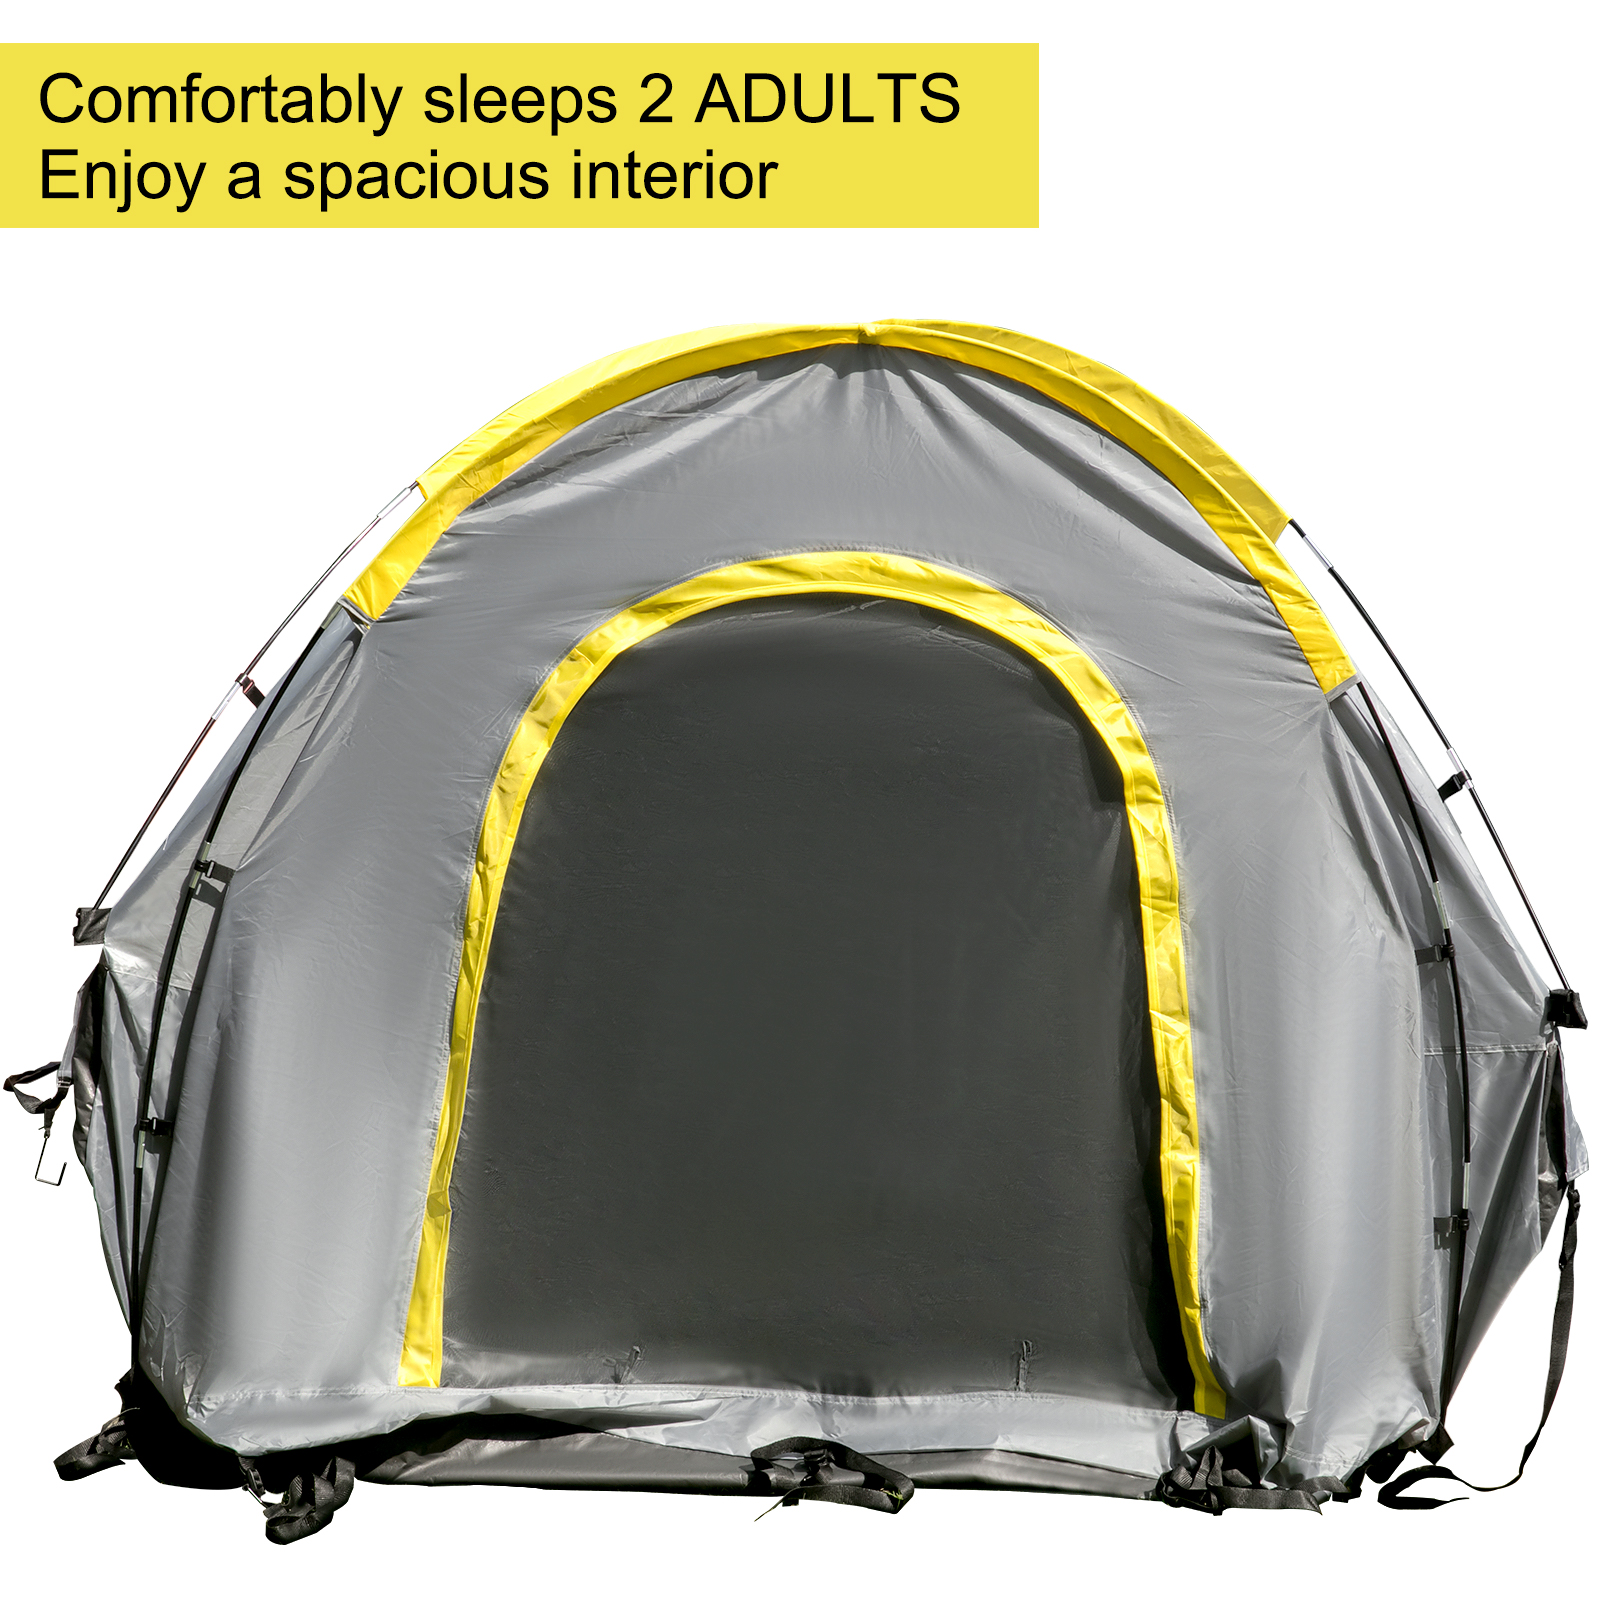 truck tent,6.5 ft,waterproof